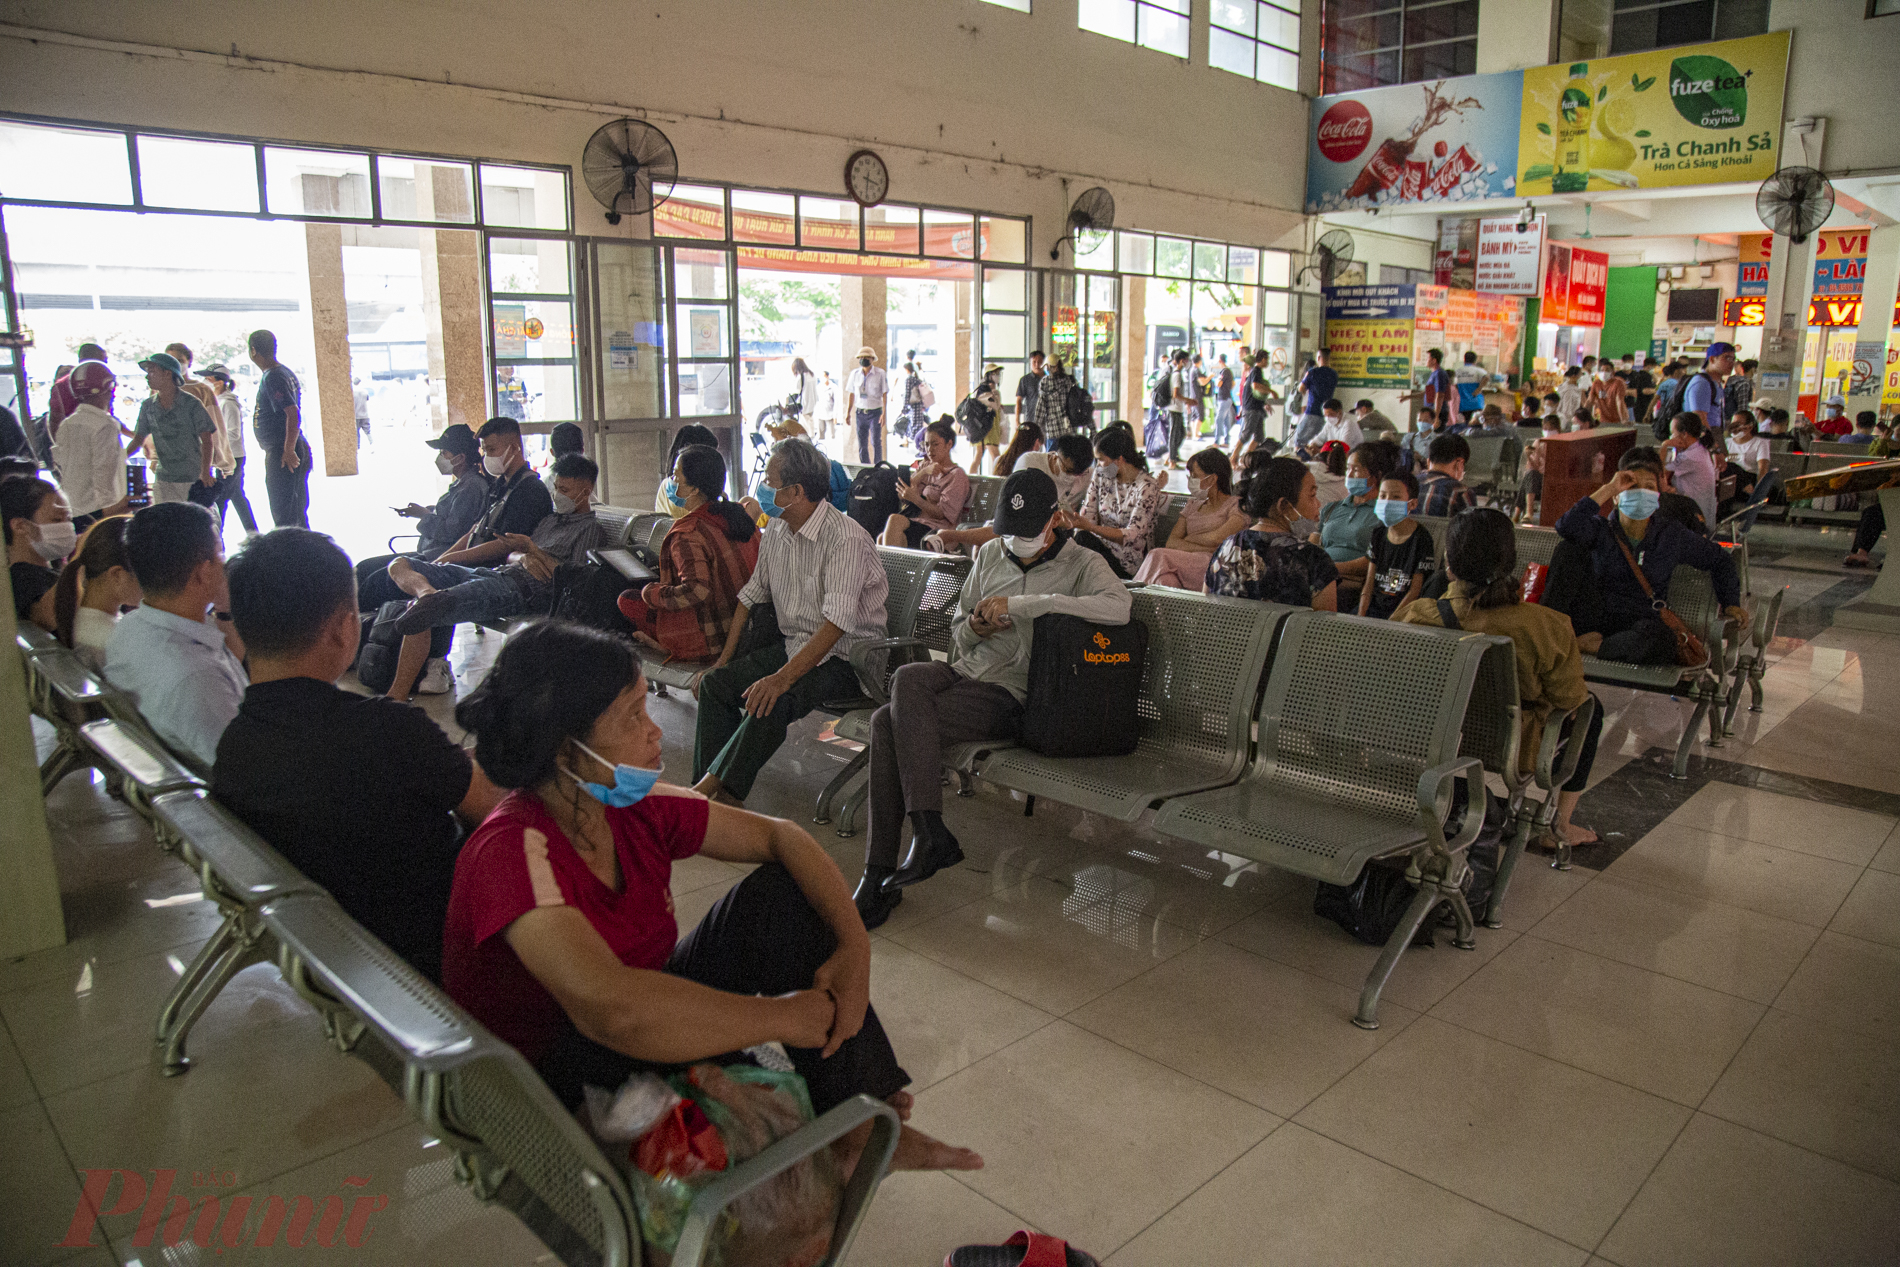 Từ khoảng 14h30 chiều 31/8, rất đông người dân đang sinh sống, học tập và làm việc tại Hà Nội đã bắt đầu kéo ùn ùn ra bến xe khách Mỹ Đình (Hà Nội) mua vé để kịp lên chuyến xe khách về quê nghỉ lễ mùng 2/9.